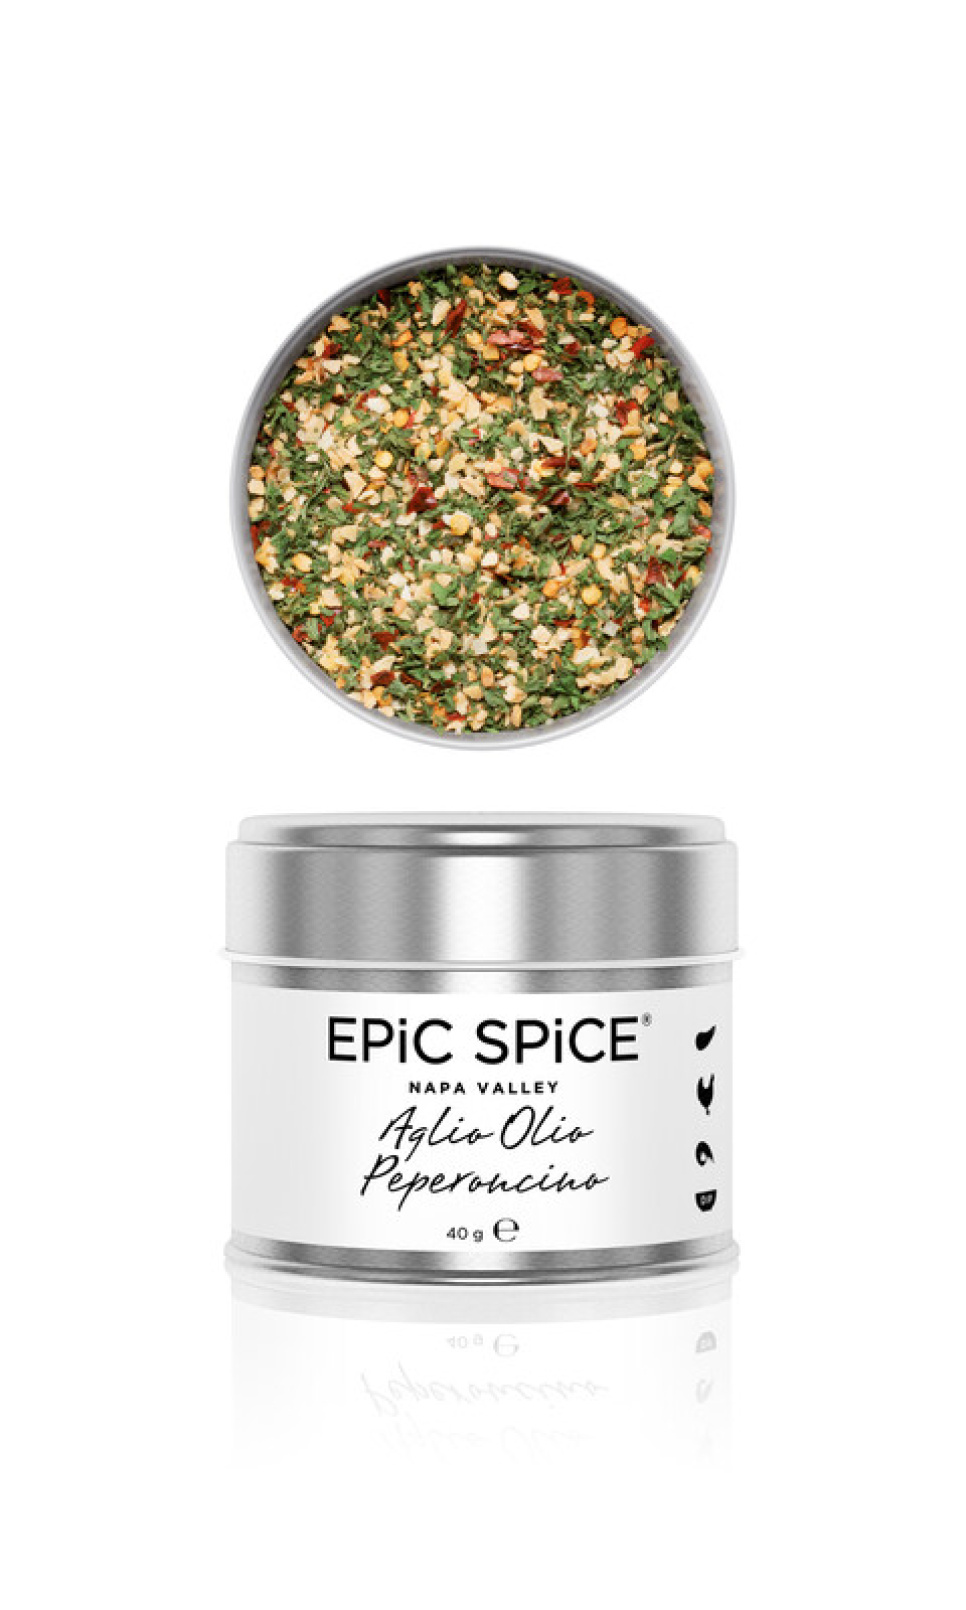 Aglio Olio Peperoncino, mélange d\'épices, 40g - Epic Spice dans le groupe Cuisine / Épices et Arômes / Épices l\'adresse The Kitchen Lab (1282-28173)